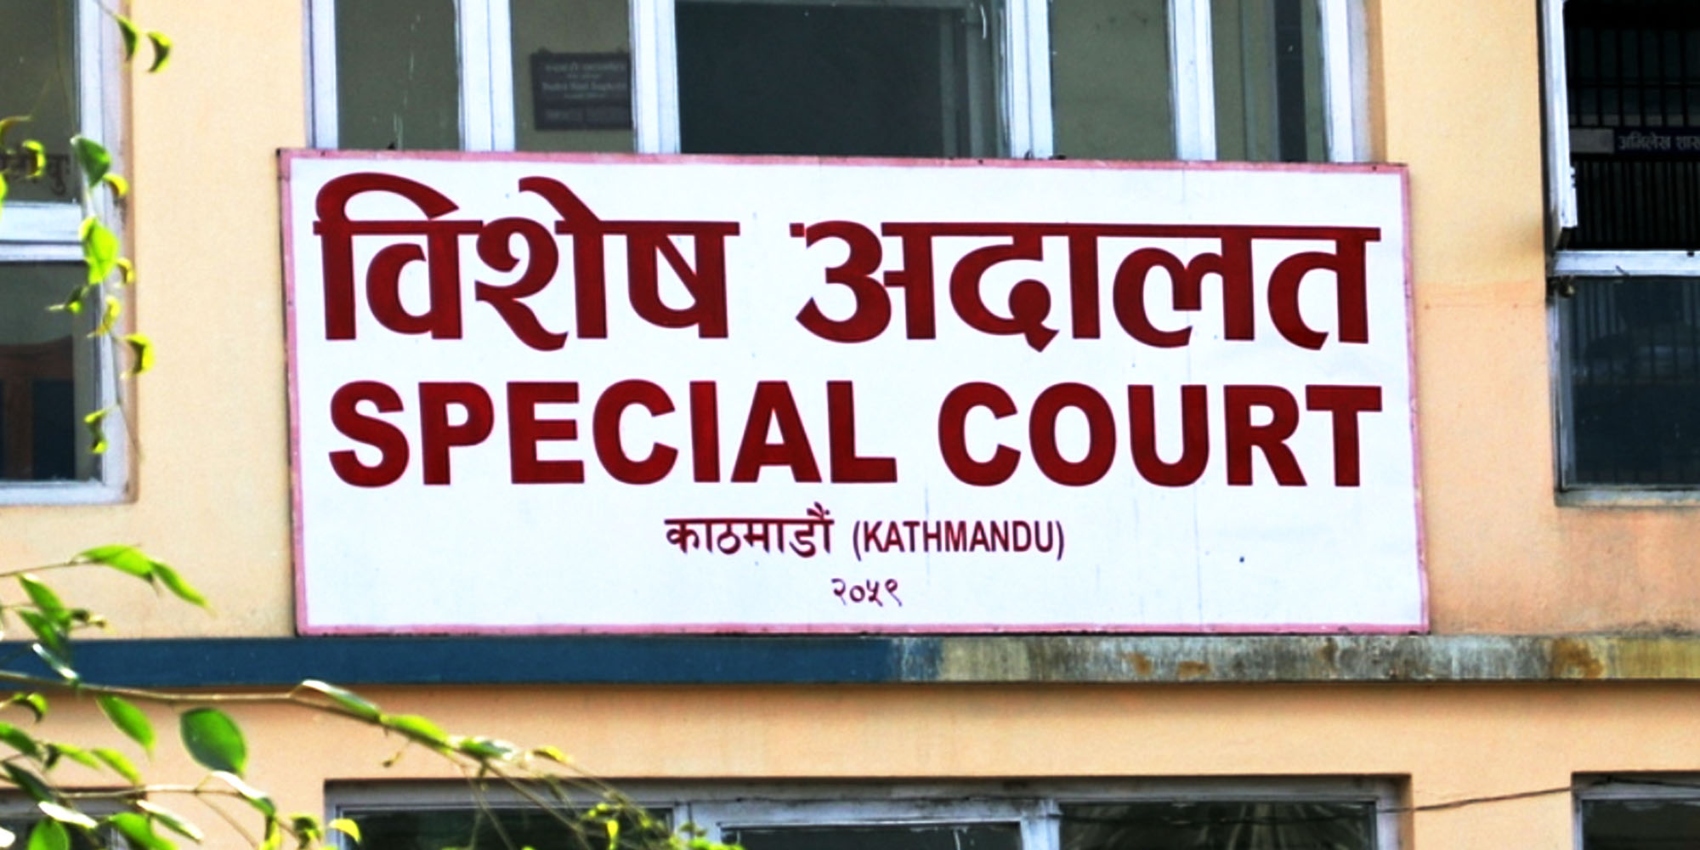 बीपी स्वास्थ्य विज्ञान प्रतिष्ठानका उपकुलपतिसहित ३ जना भ्रष्टाचार मुद्दामा जेल चलान